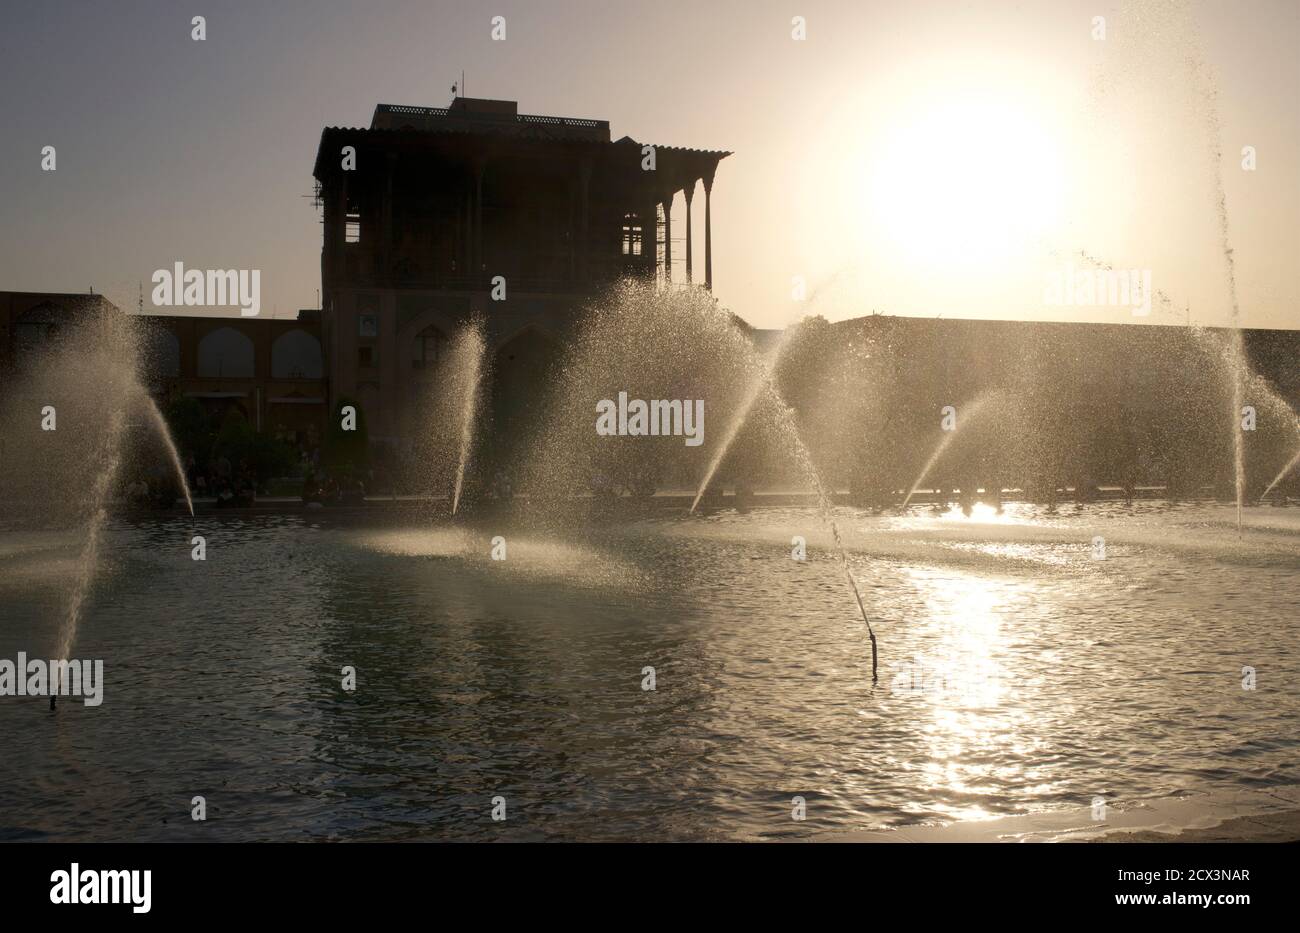 Palais Ali Qapu et fontaines publiques sur la place Naqsh-e Jahan. Place de l'Imam, ville d'Isfahan, Iran Banque D'Images